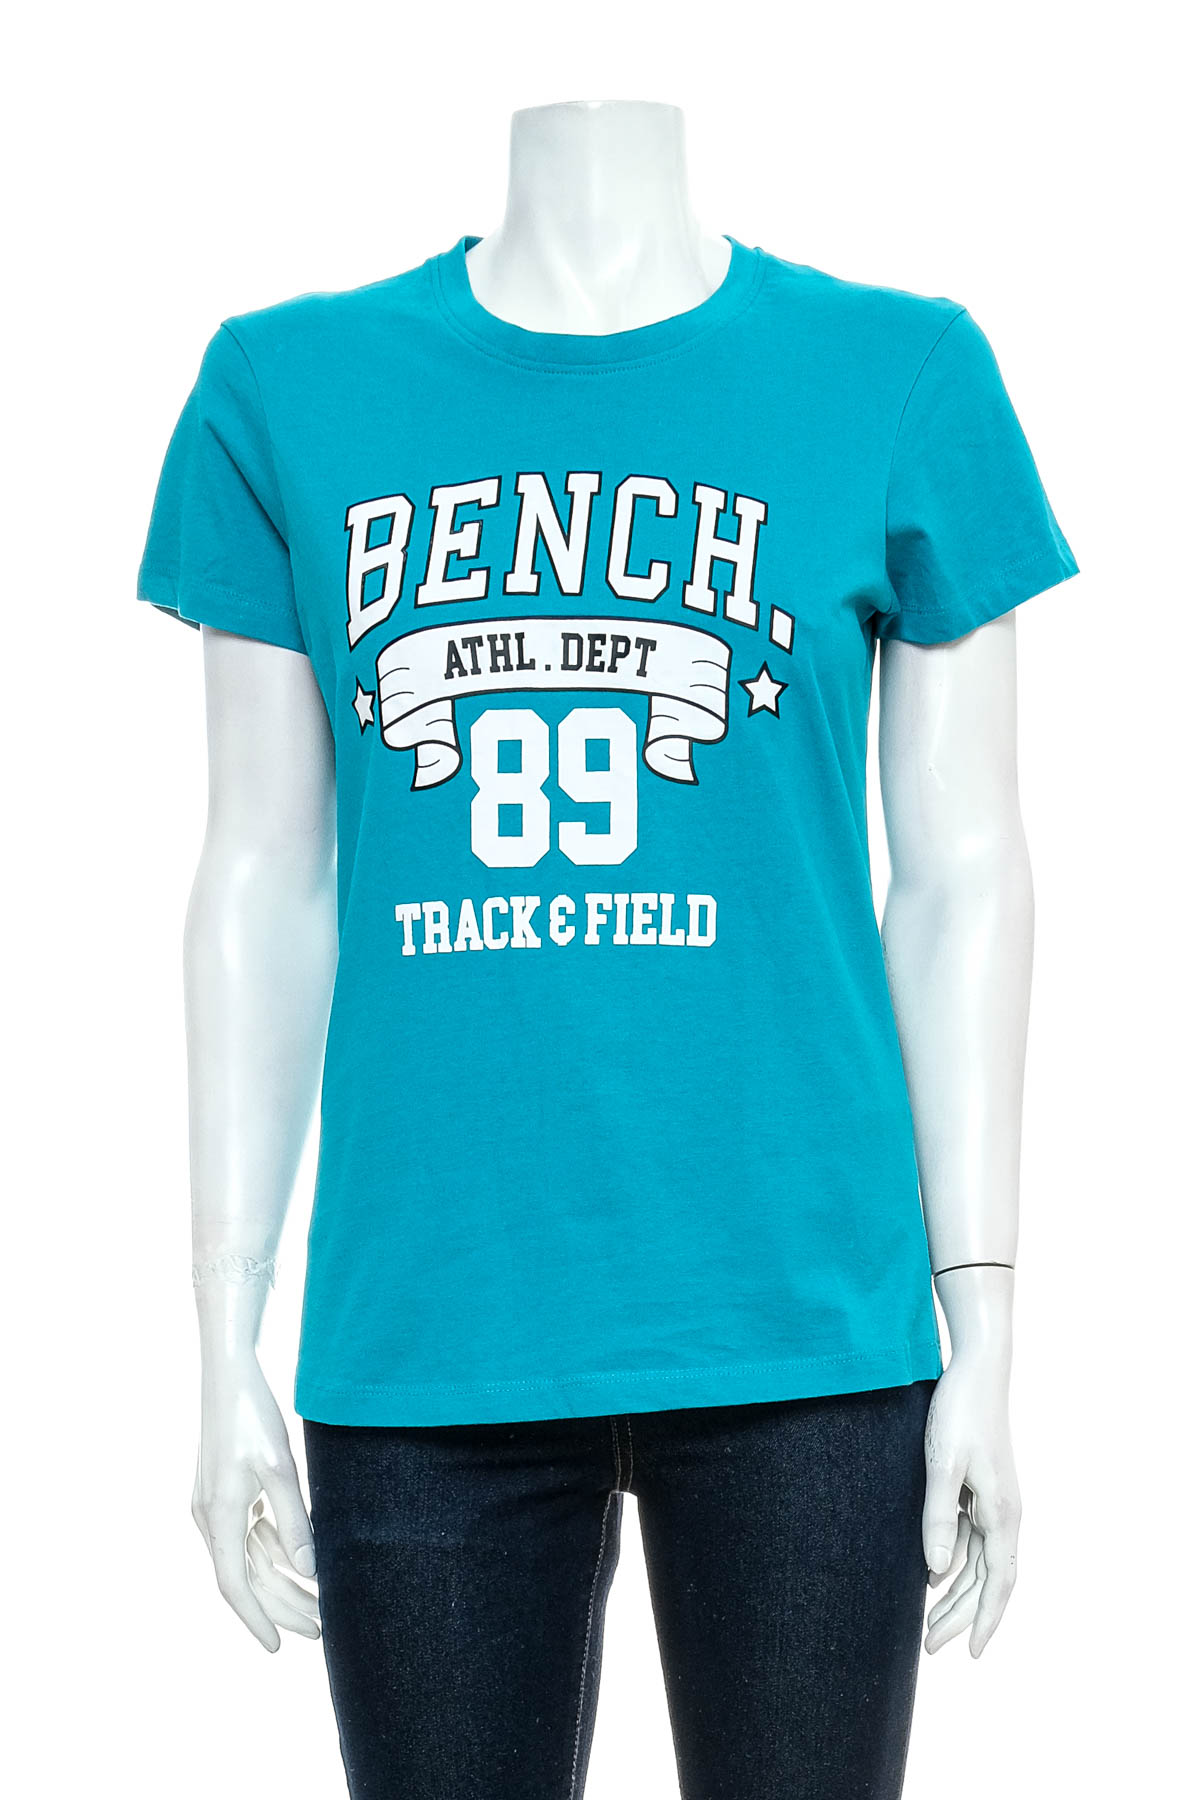 Γυναικεία μπλούζα - Bench. - 0